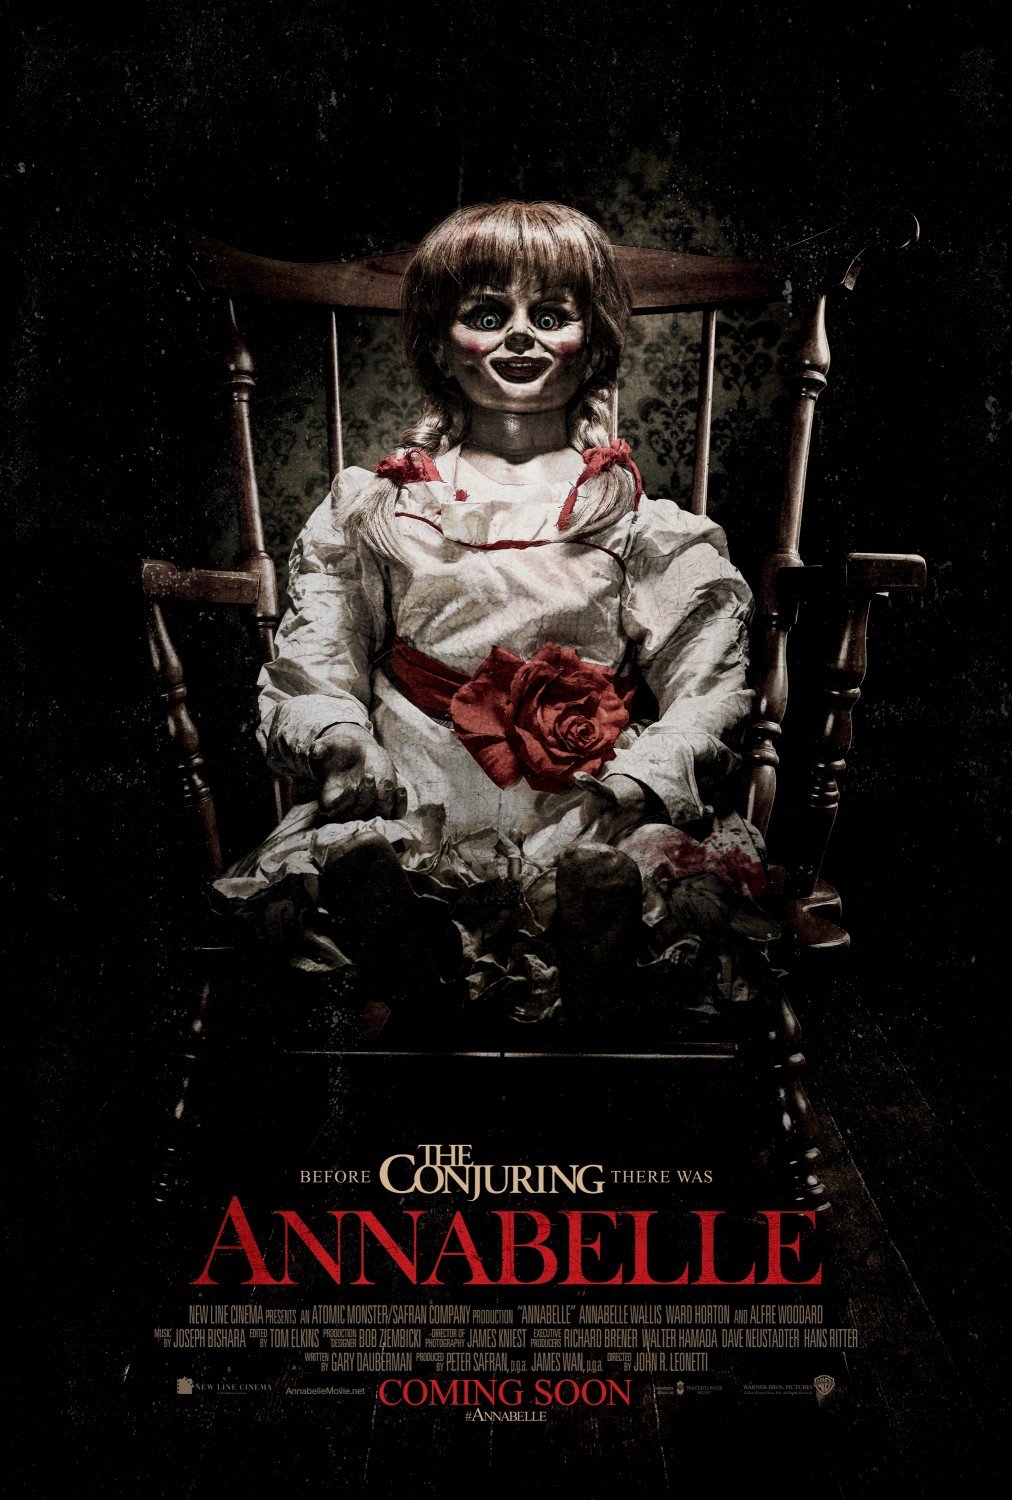 FULL MOVIE: Annabelle (2014)